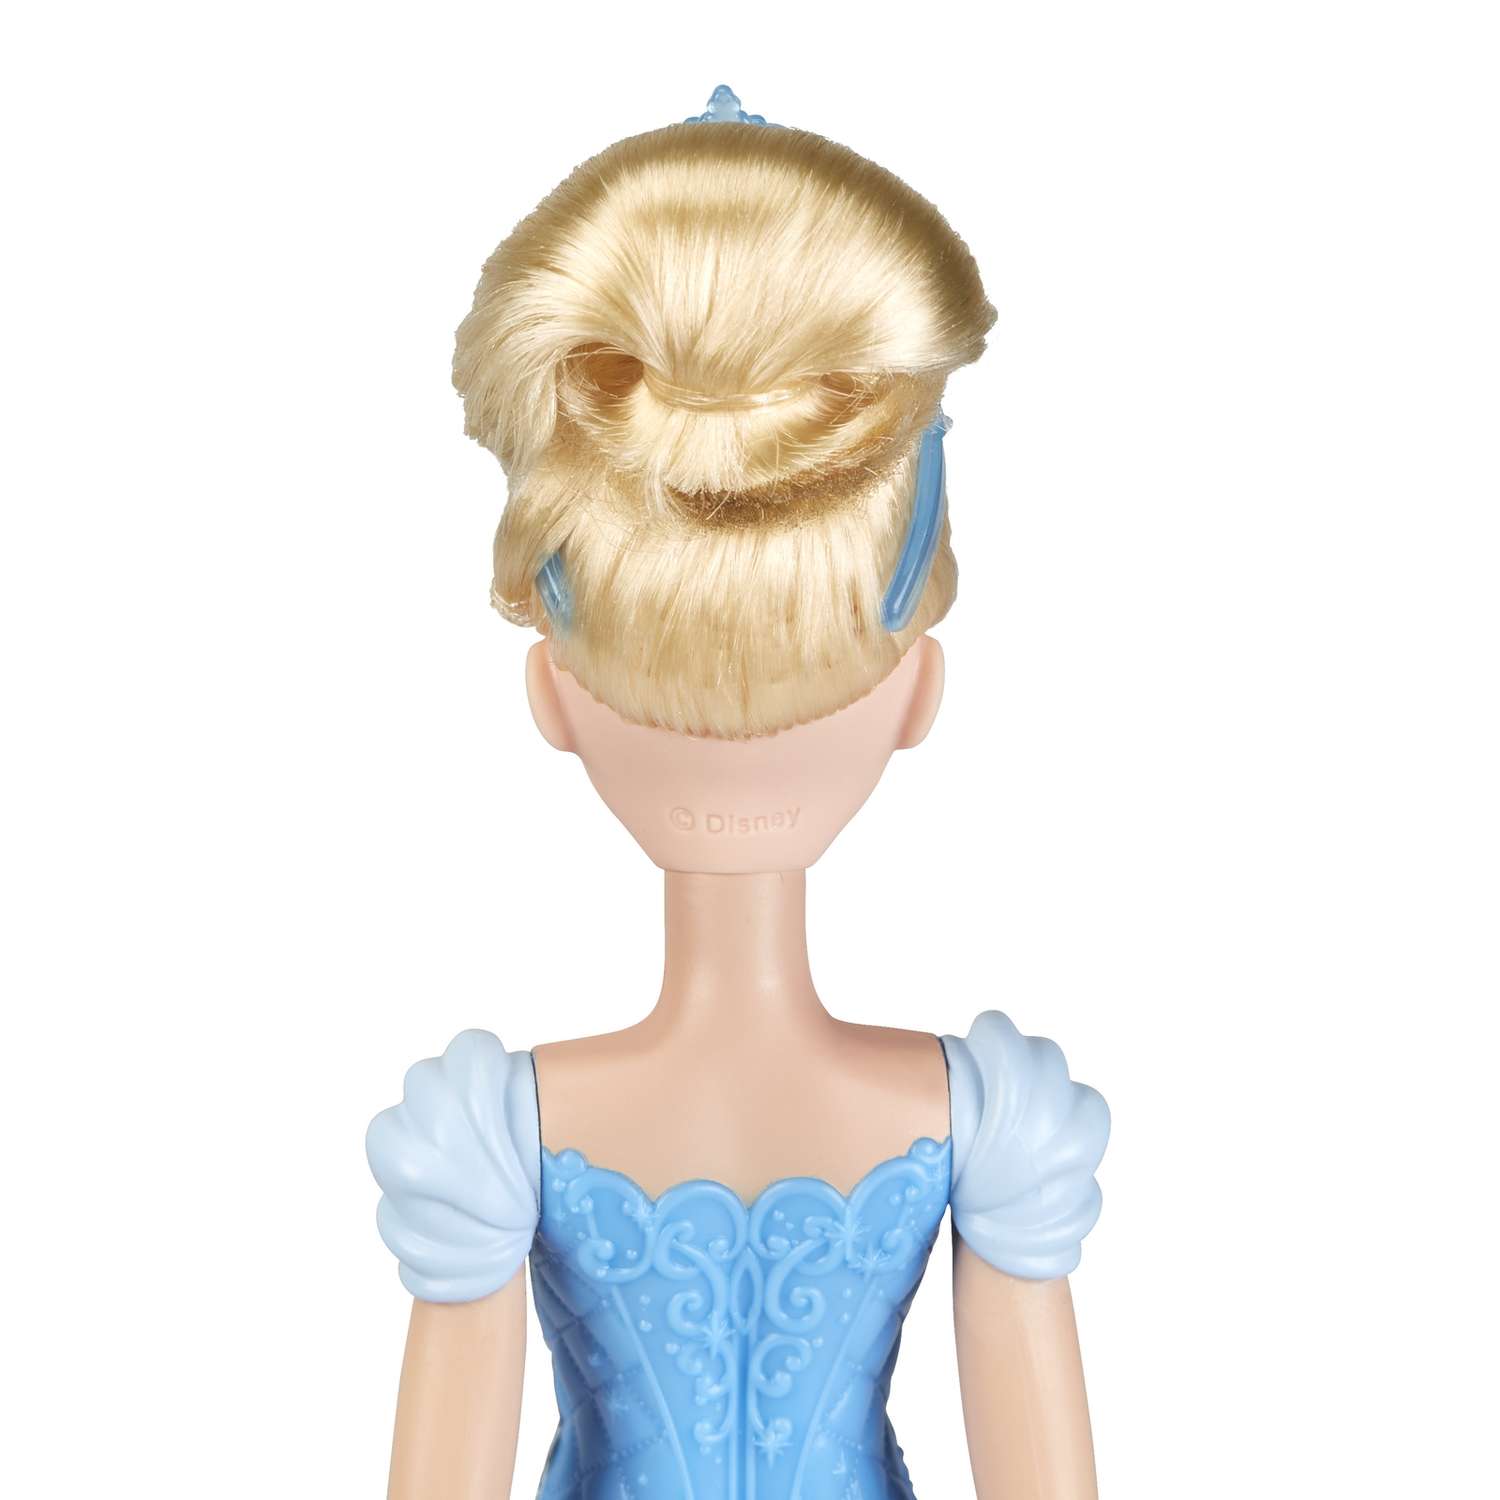 Кукла Disney Princess Hasbro А Золушка E4158ES2 E4158ES2 - фото 10